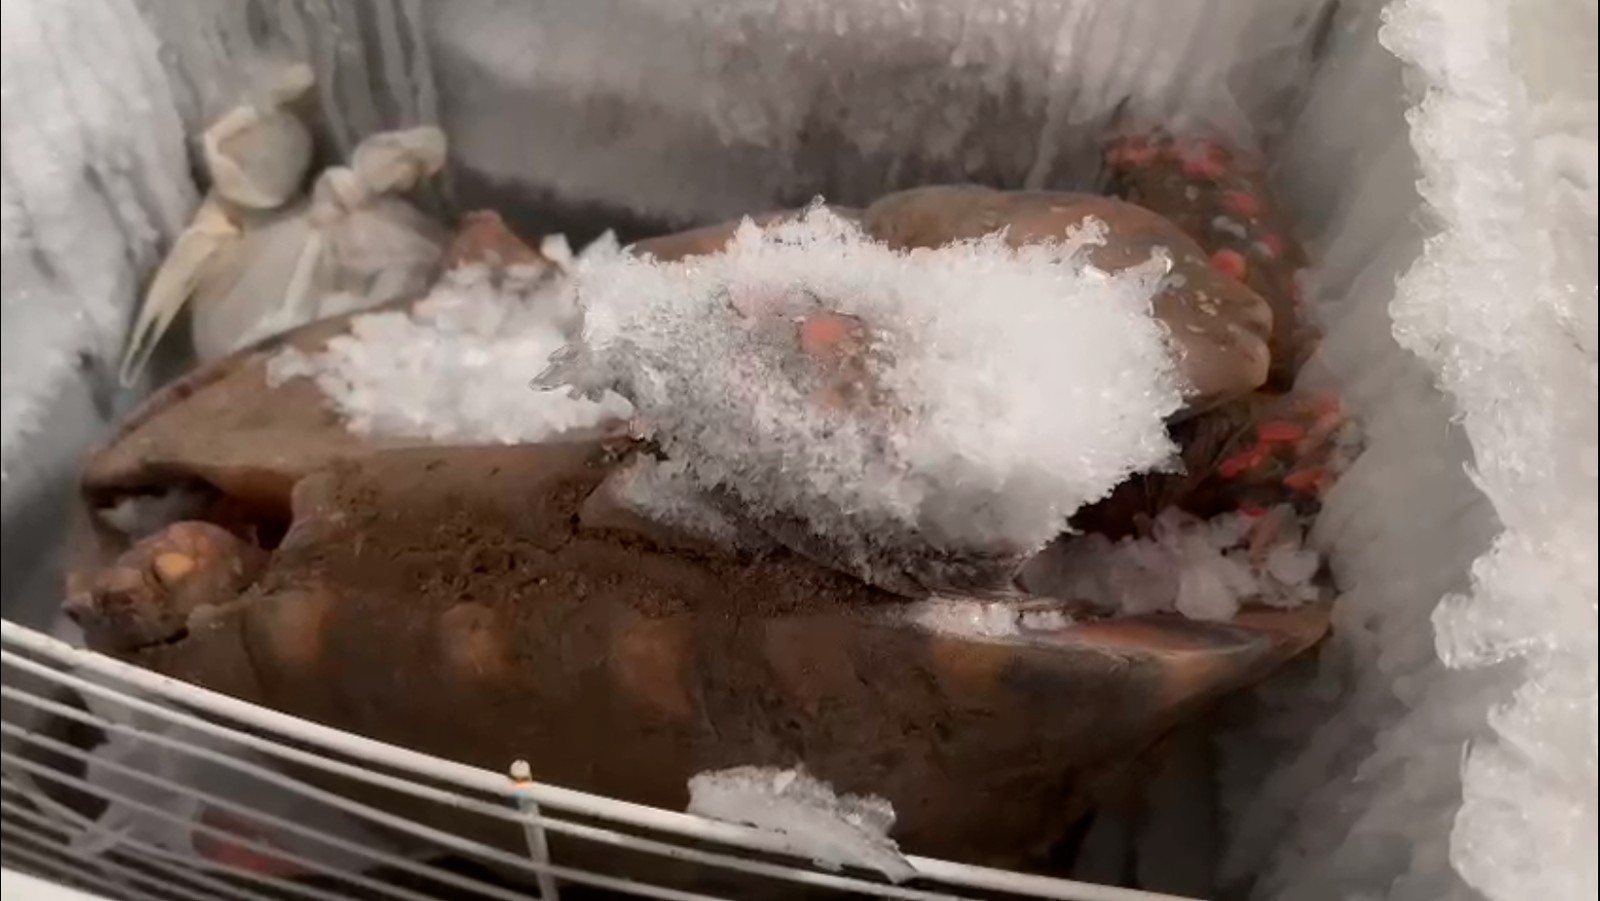 Tartaruga foi encontrada congelada em freezer — Foto: Divulgação / Polícia Federal